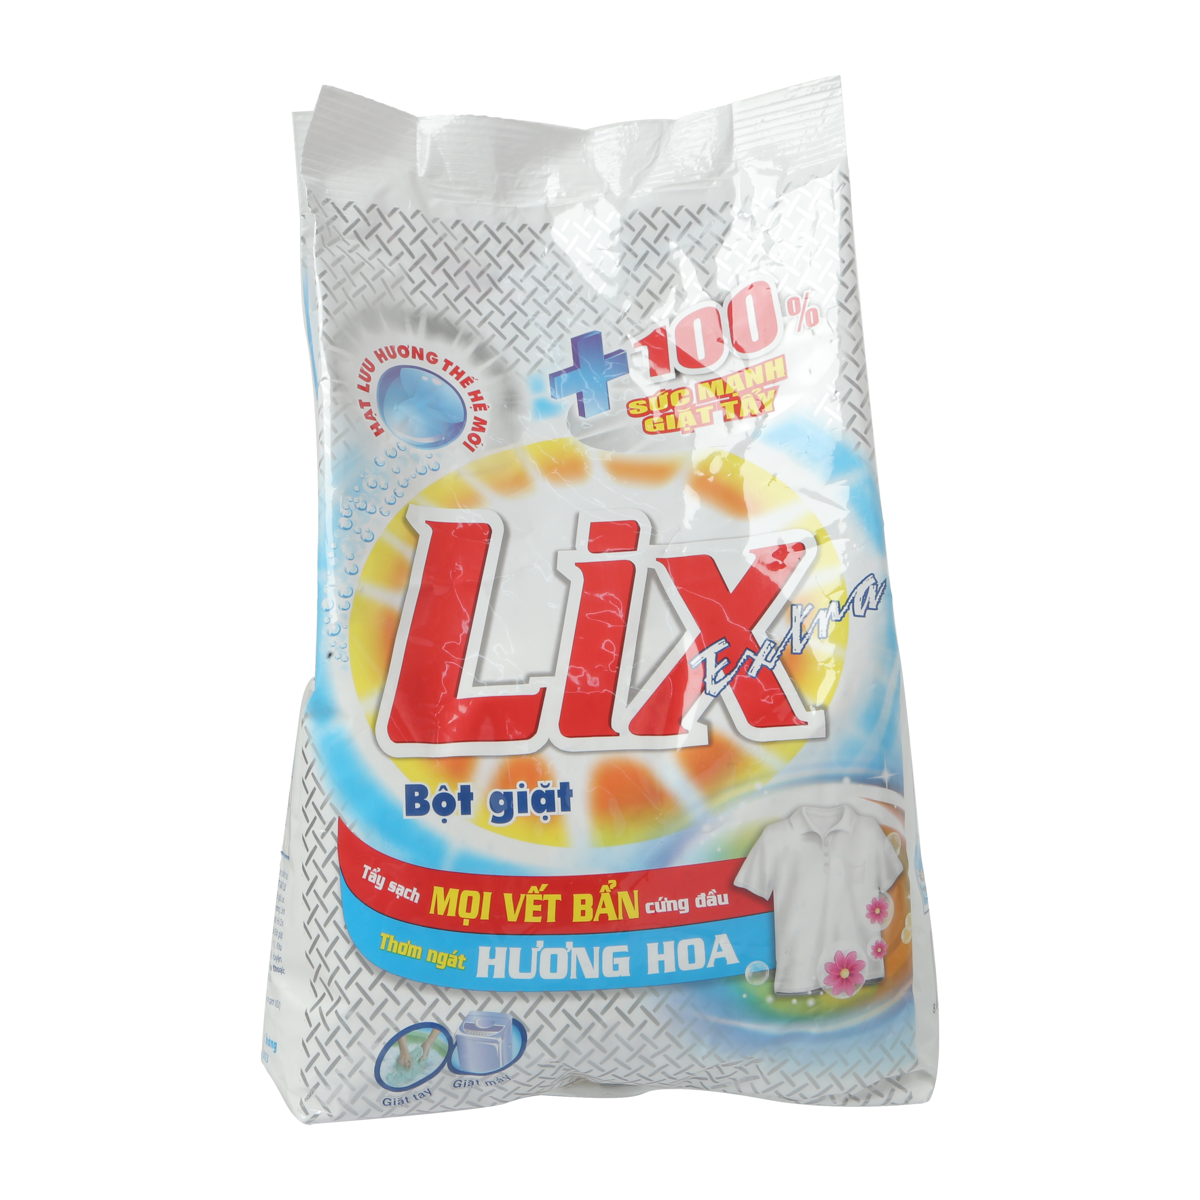 Bột Giặt Lix Extra Hương Hoa 2.4KG